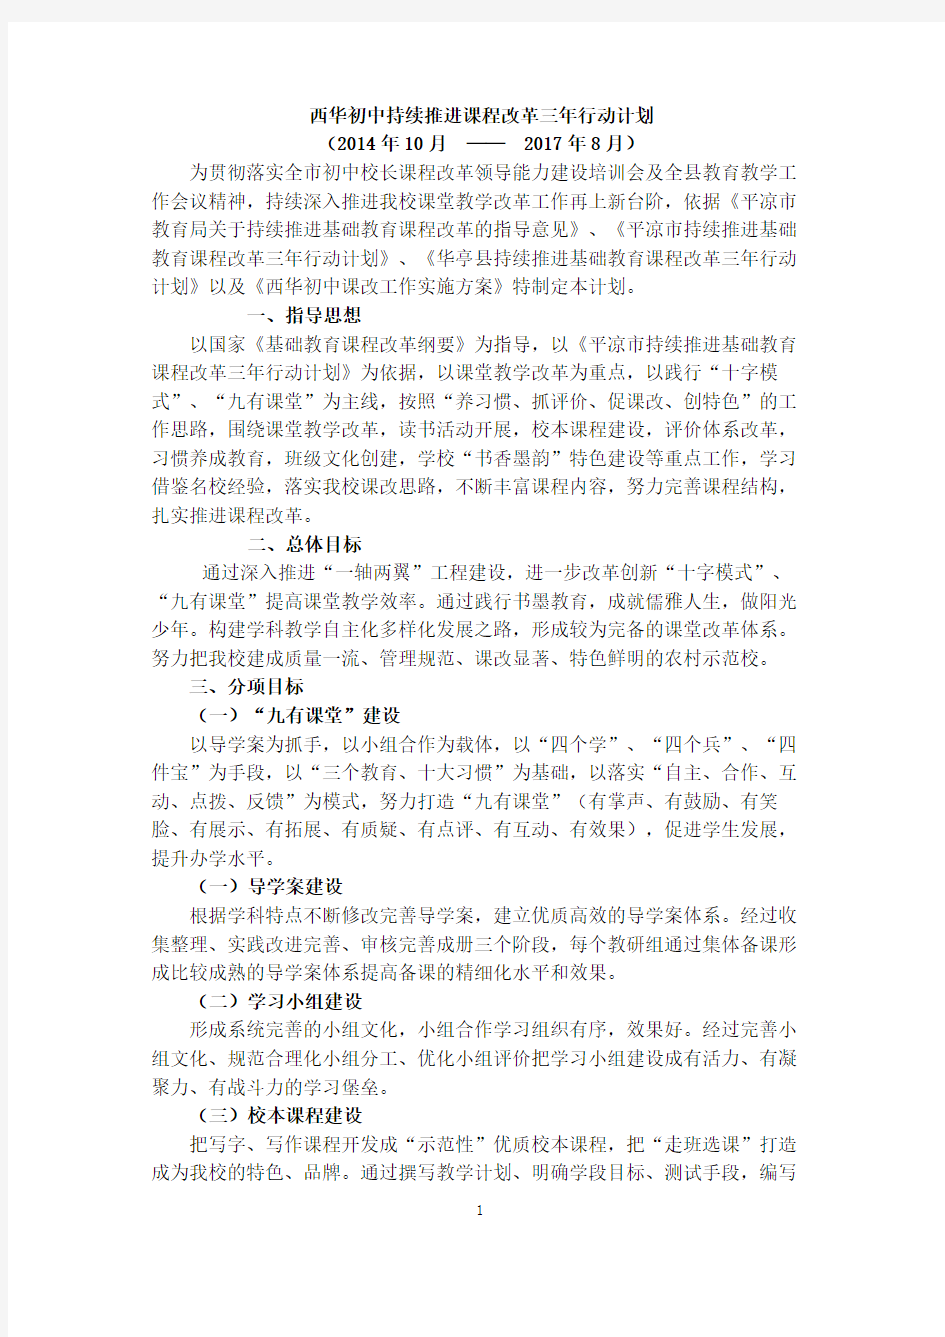 西华初中持续推进课堂教学改革三年行动计划2015-4-15